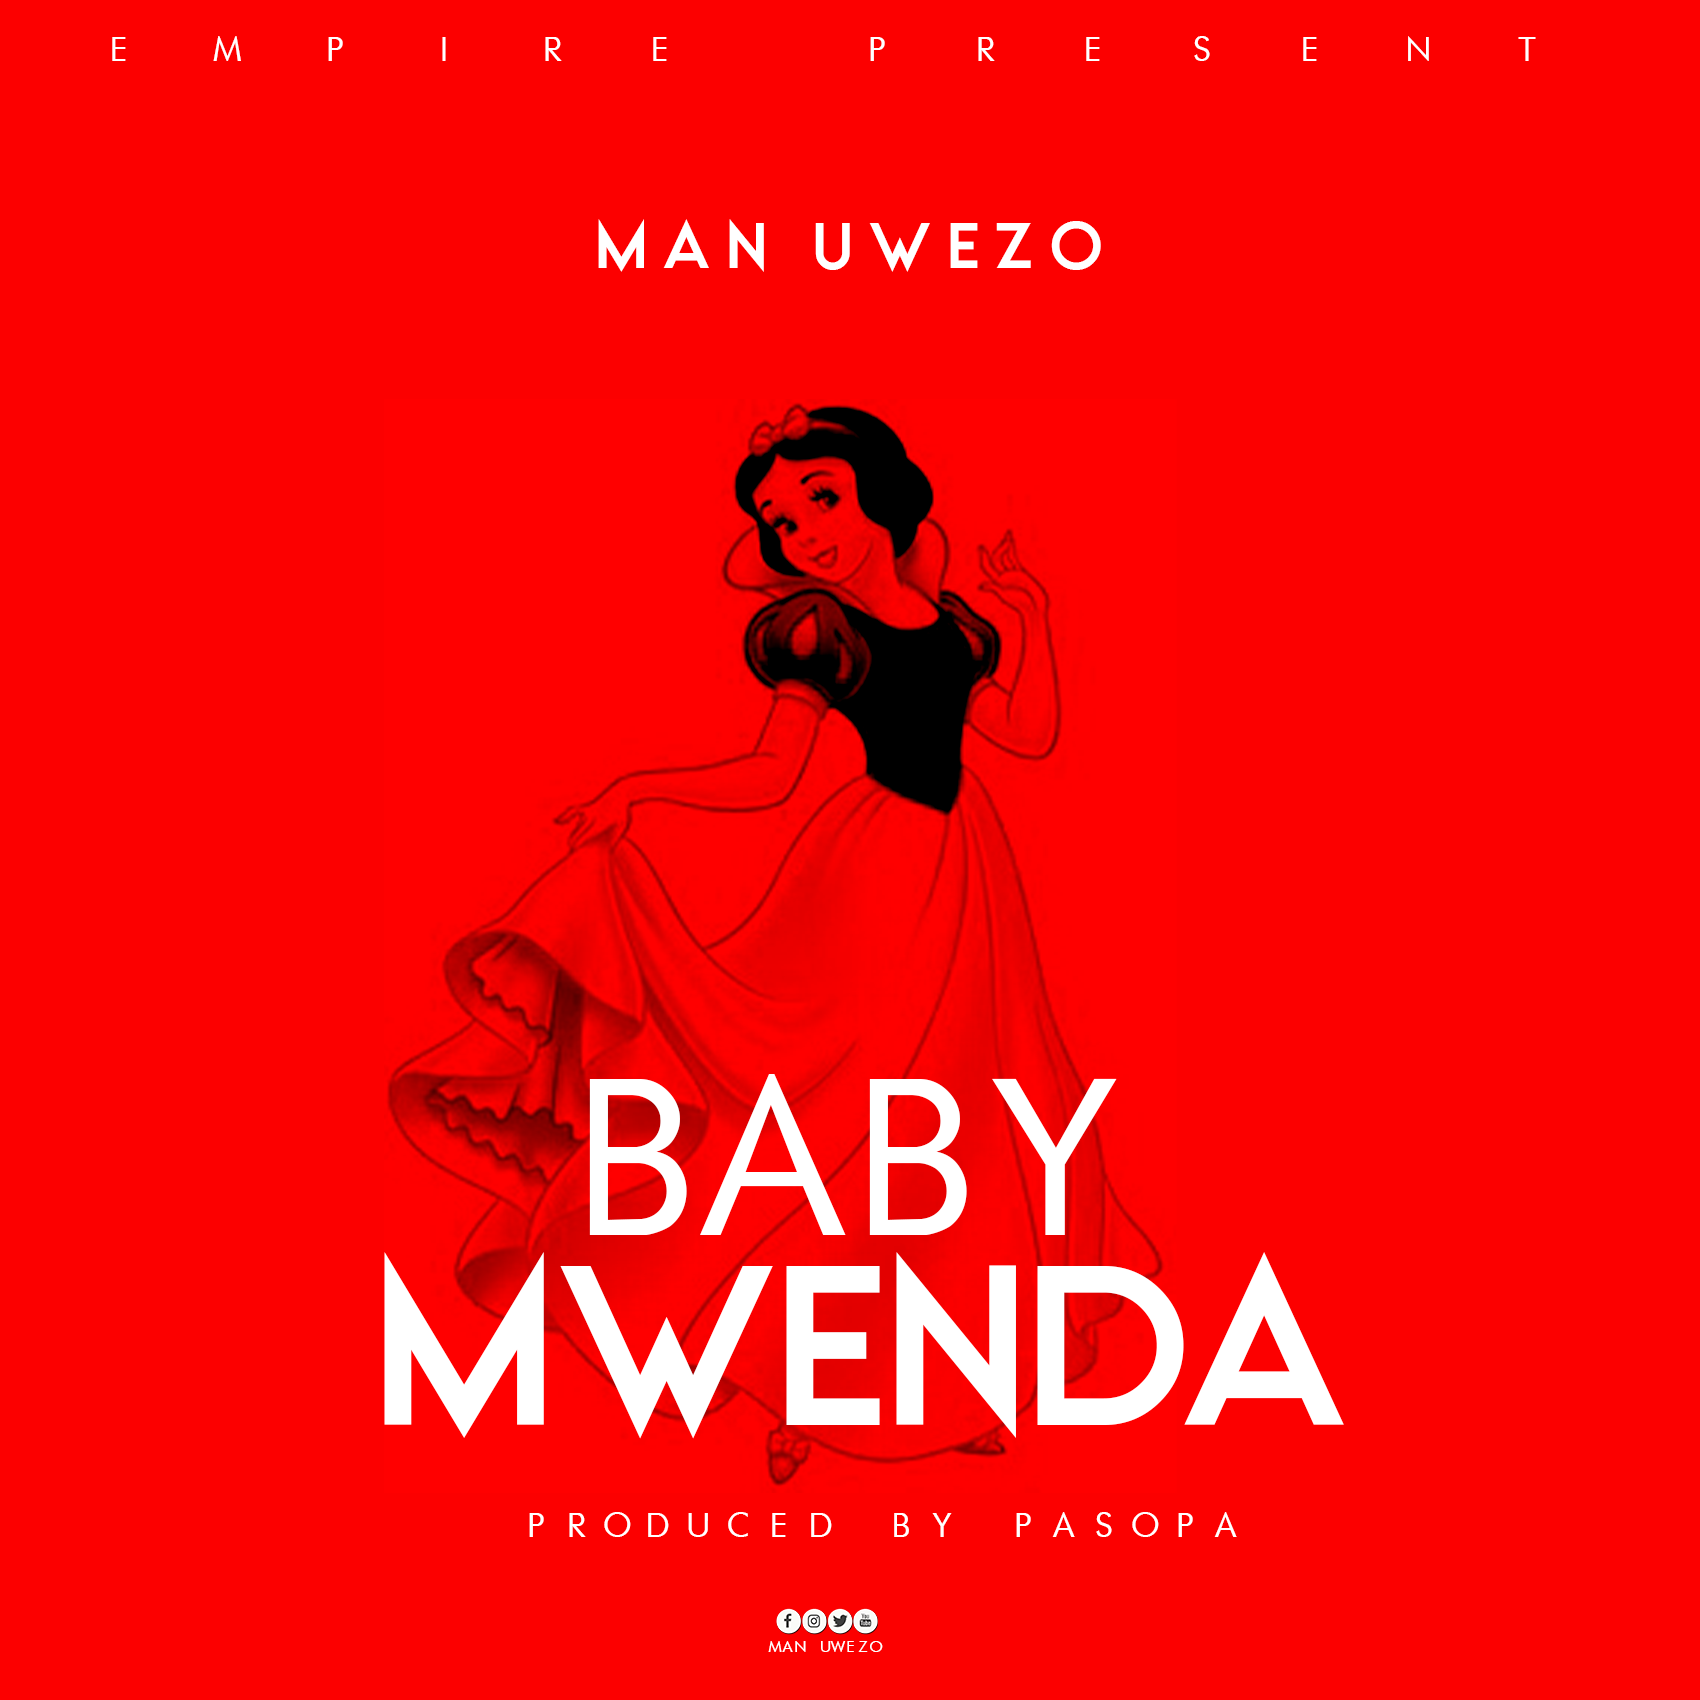 Man Uwezo Baby Mwenda ART - Bekaboy